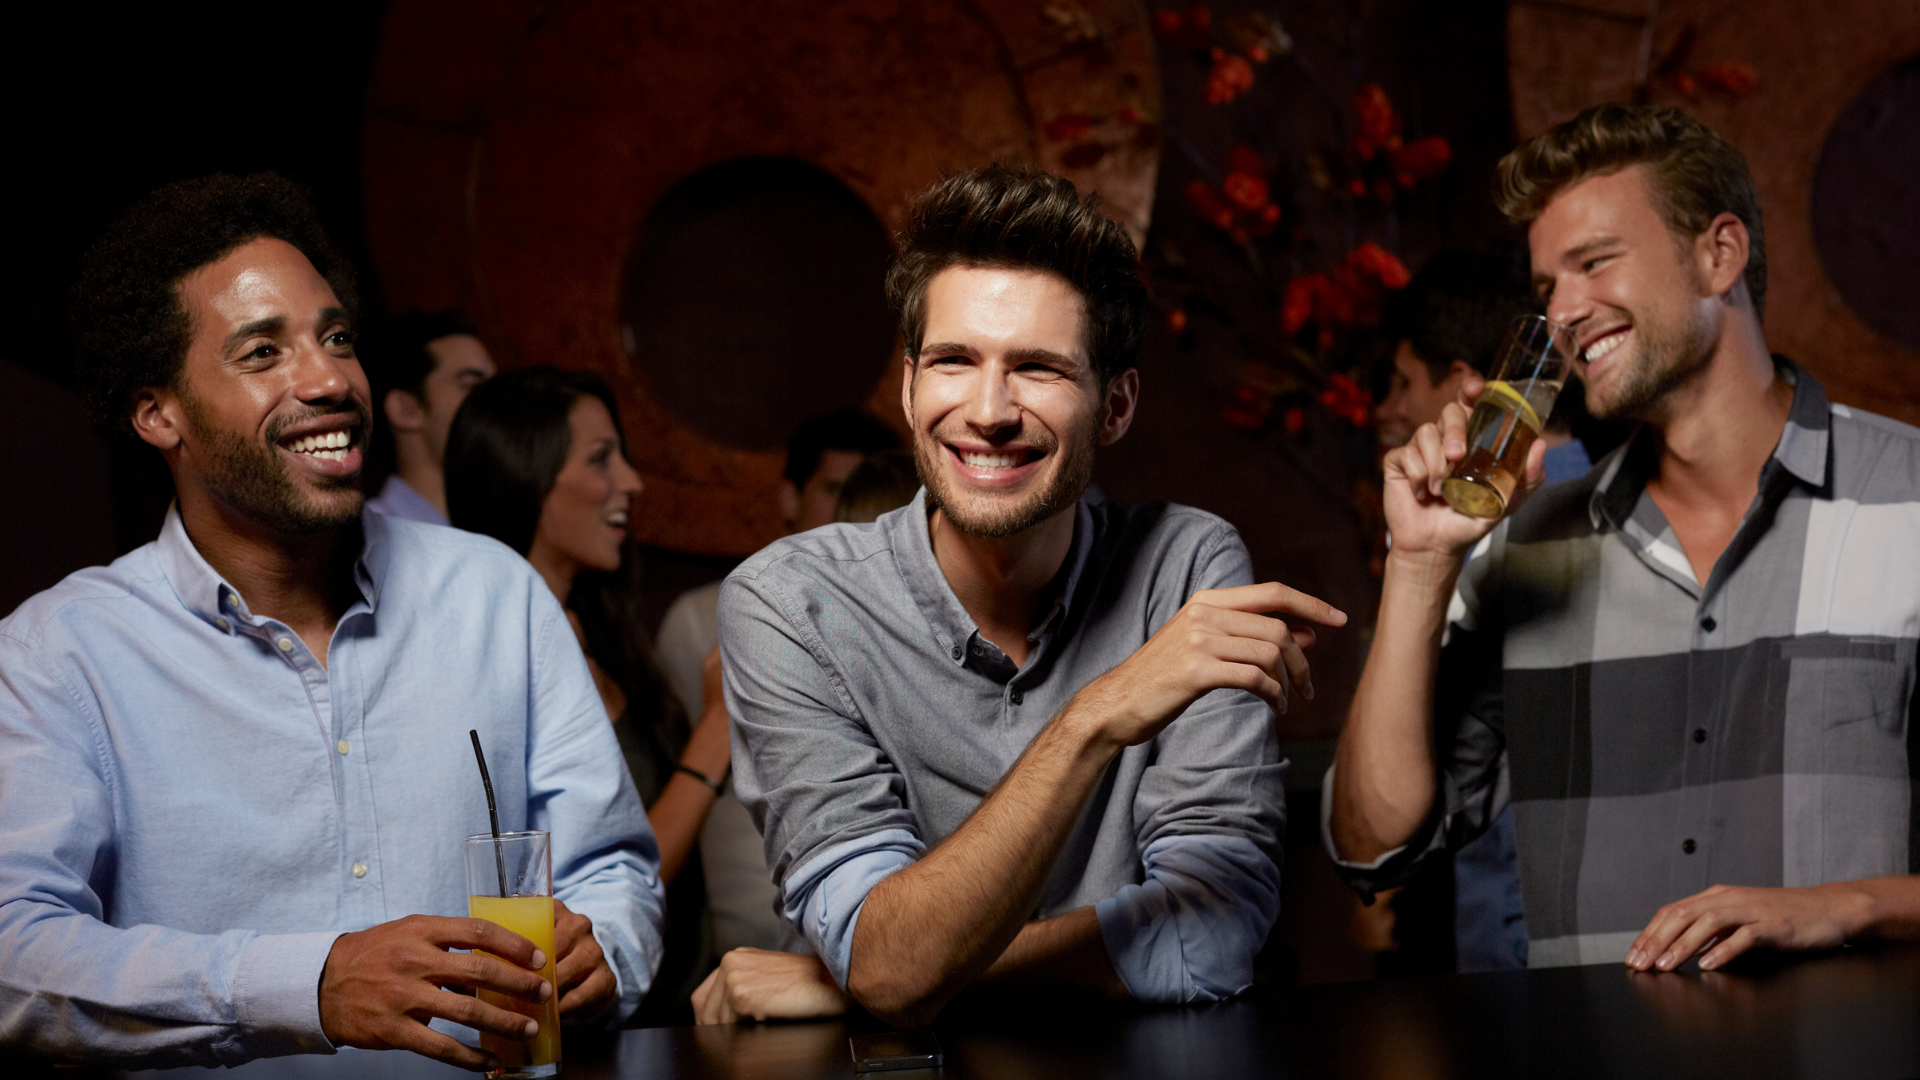 Según estudio, los hombres se sienten atraídos entre ellos estando borrachos